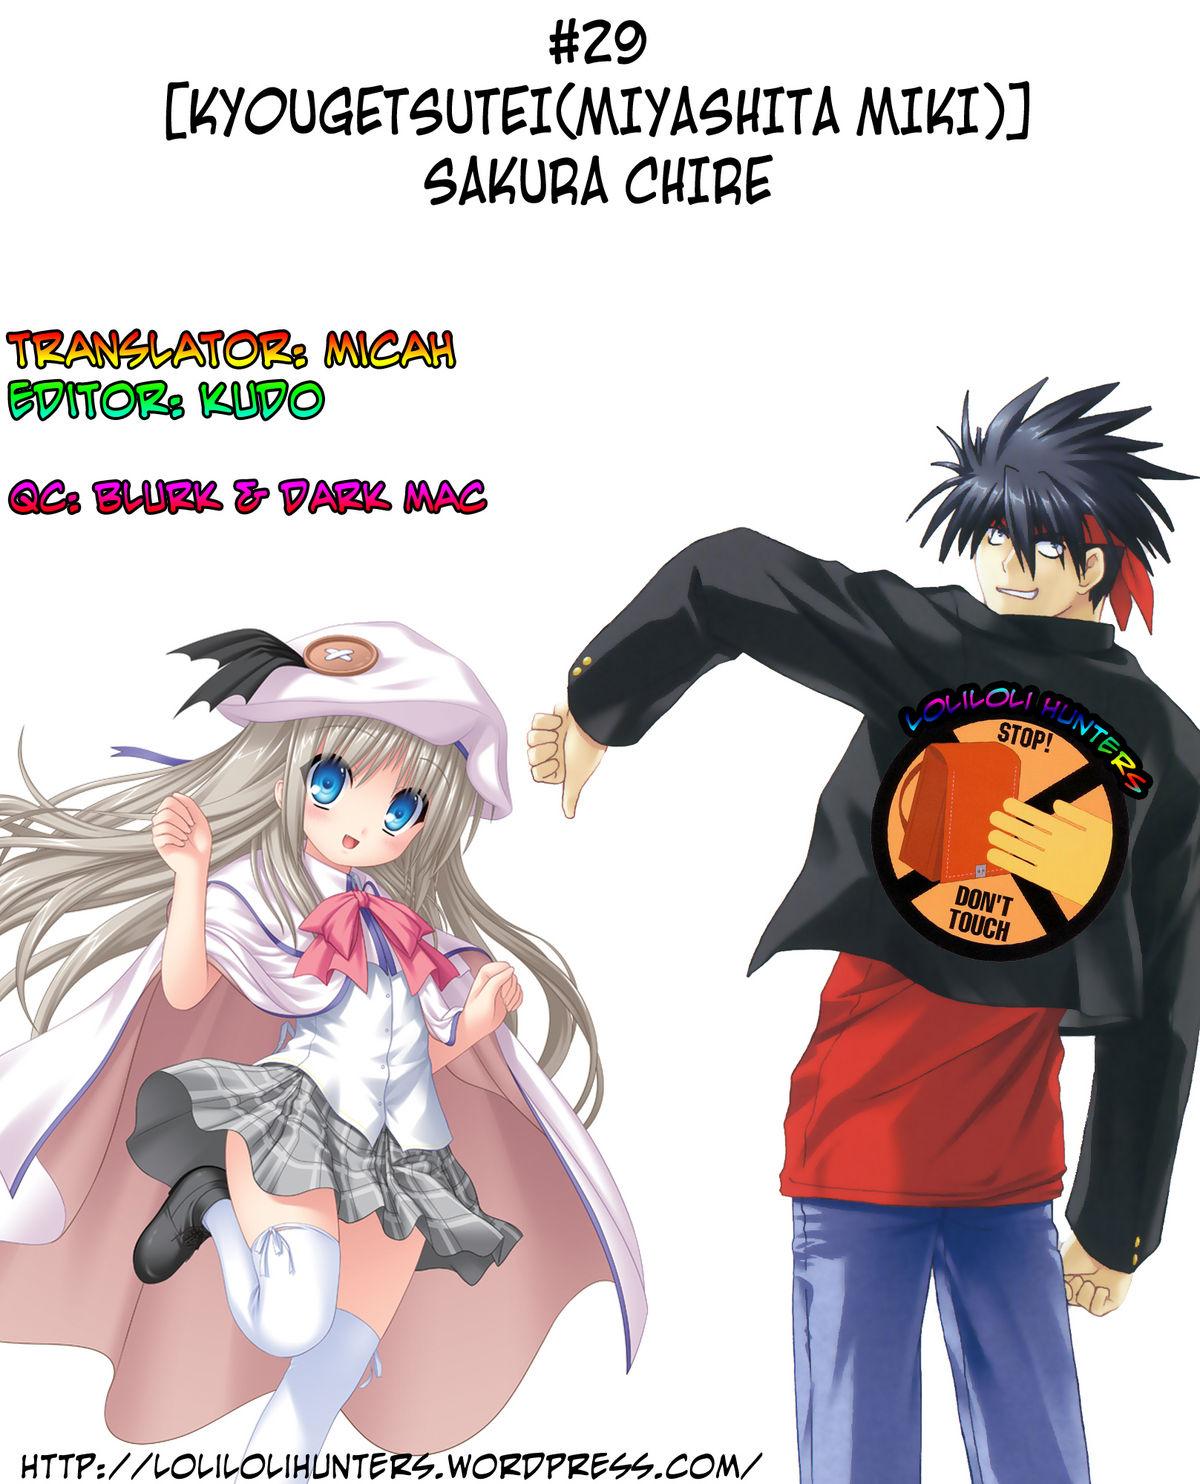 Casado Sakura Chire - Fate zero Joven - Page 26